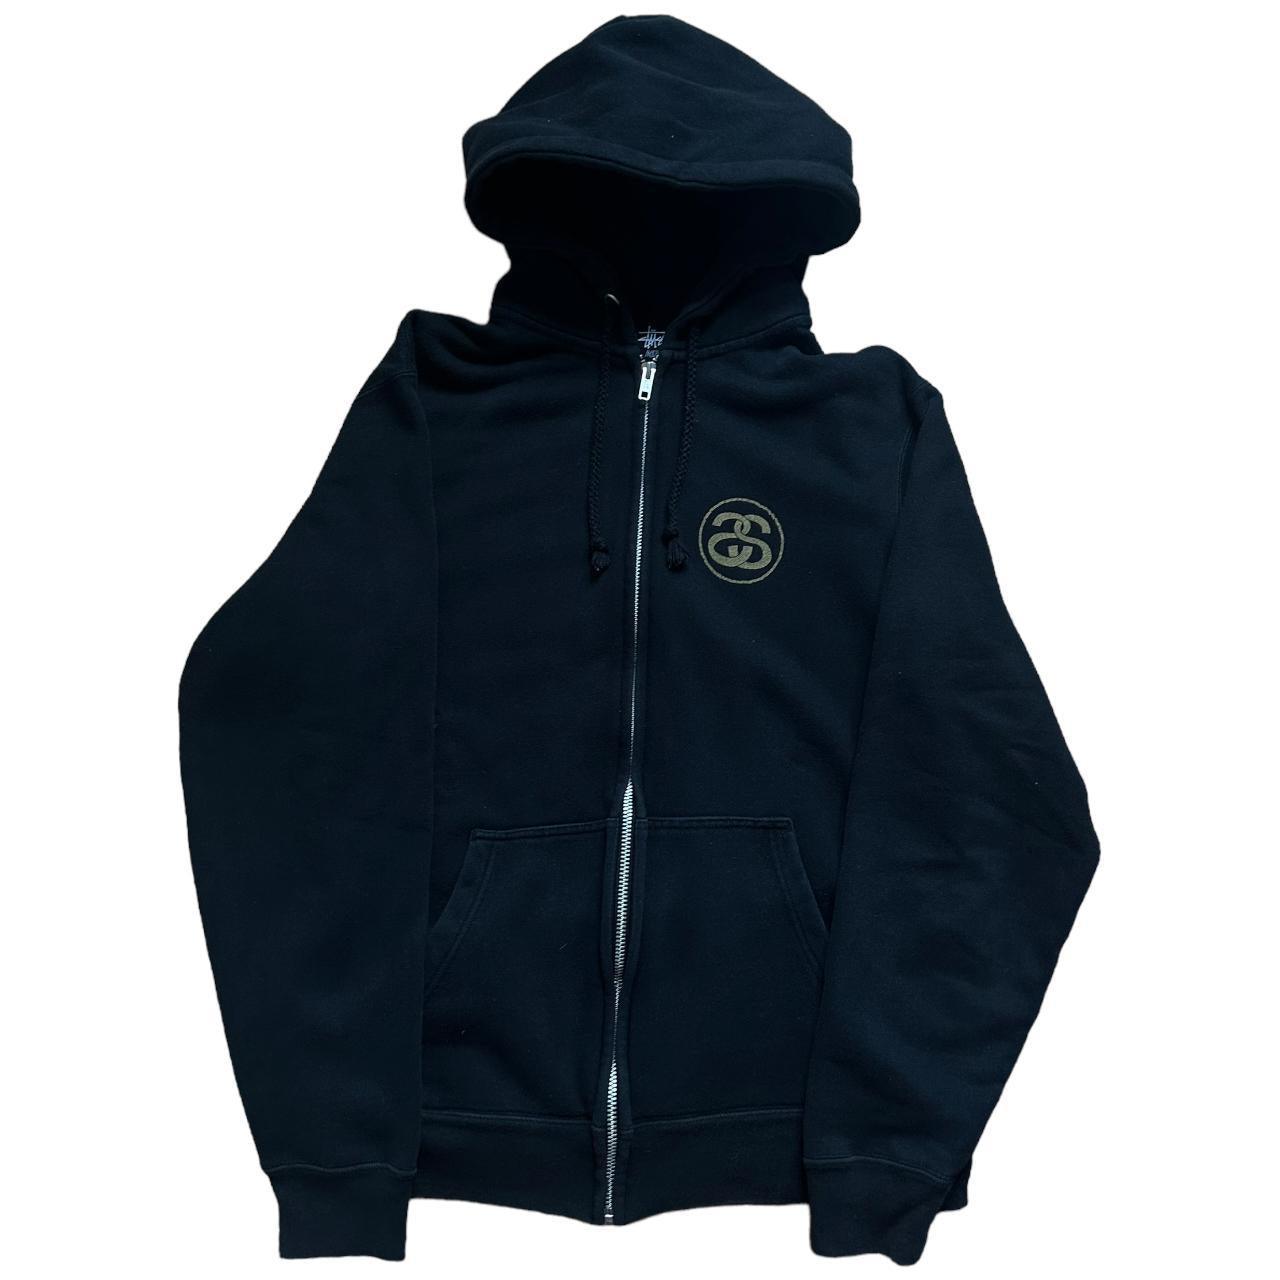 Stussy black gold zip up hoodie - Known Source